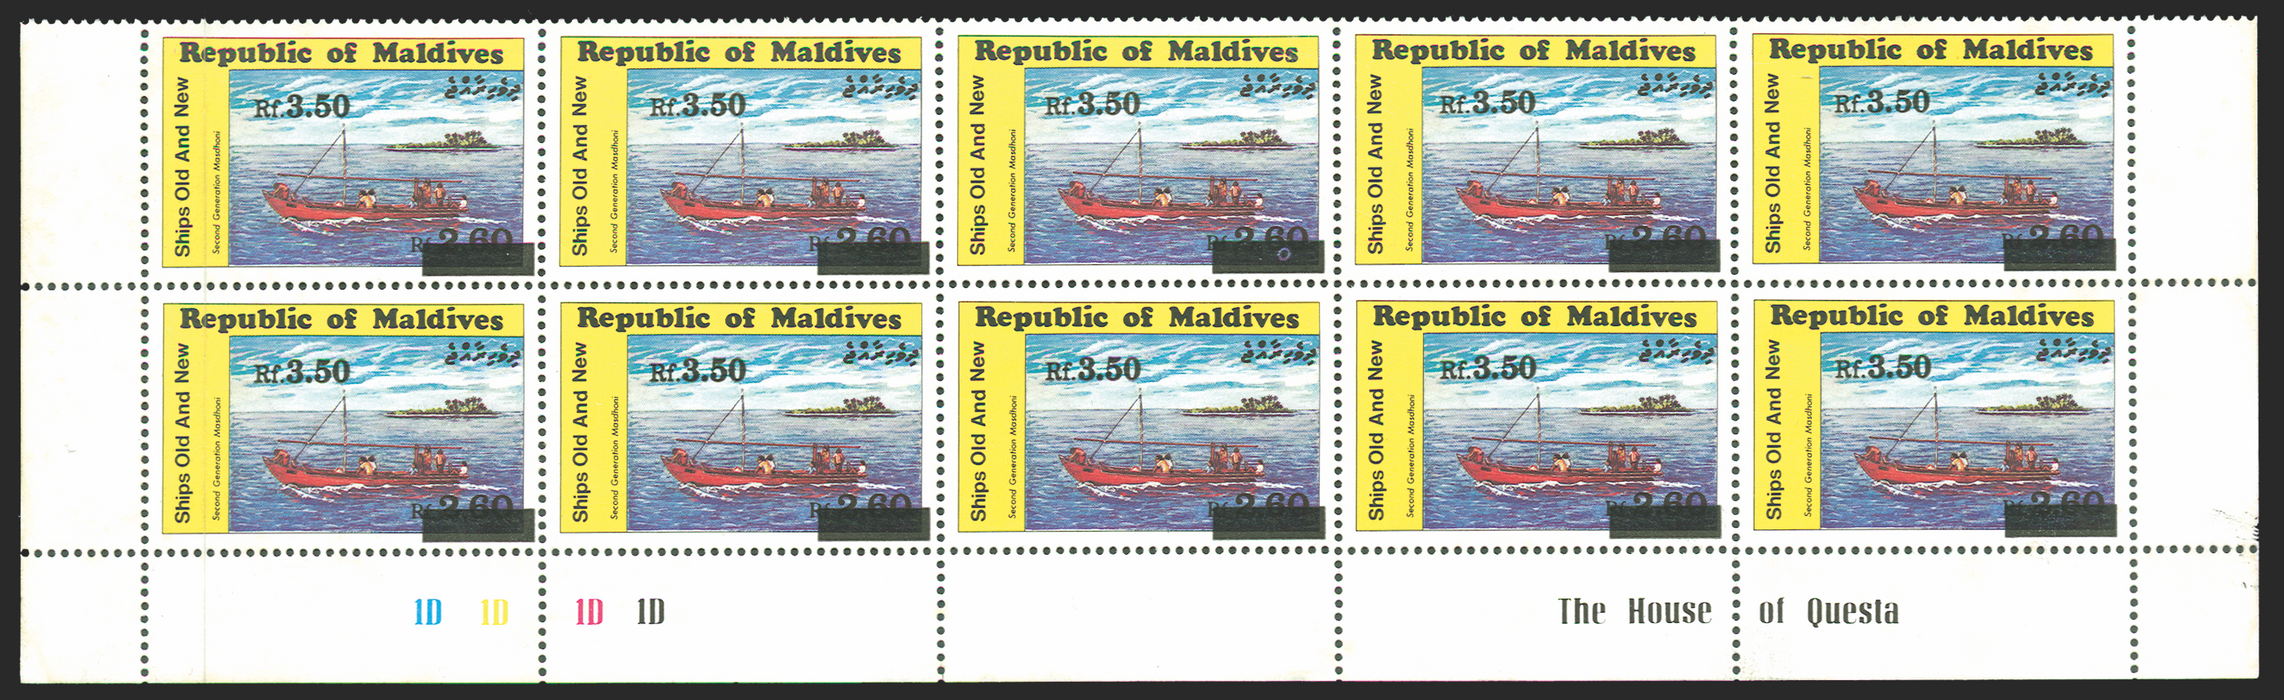 MALDIVE ISLANDS 1991 3r50 ON 2r60 'Dhoni' variety, SG1533a